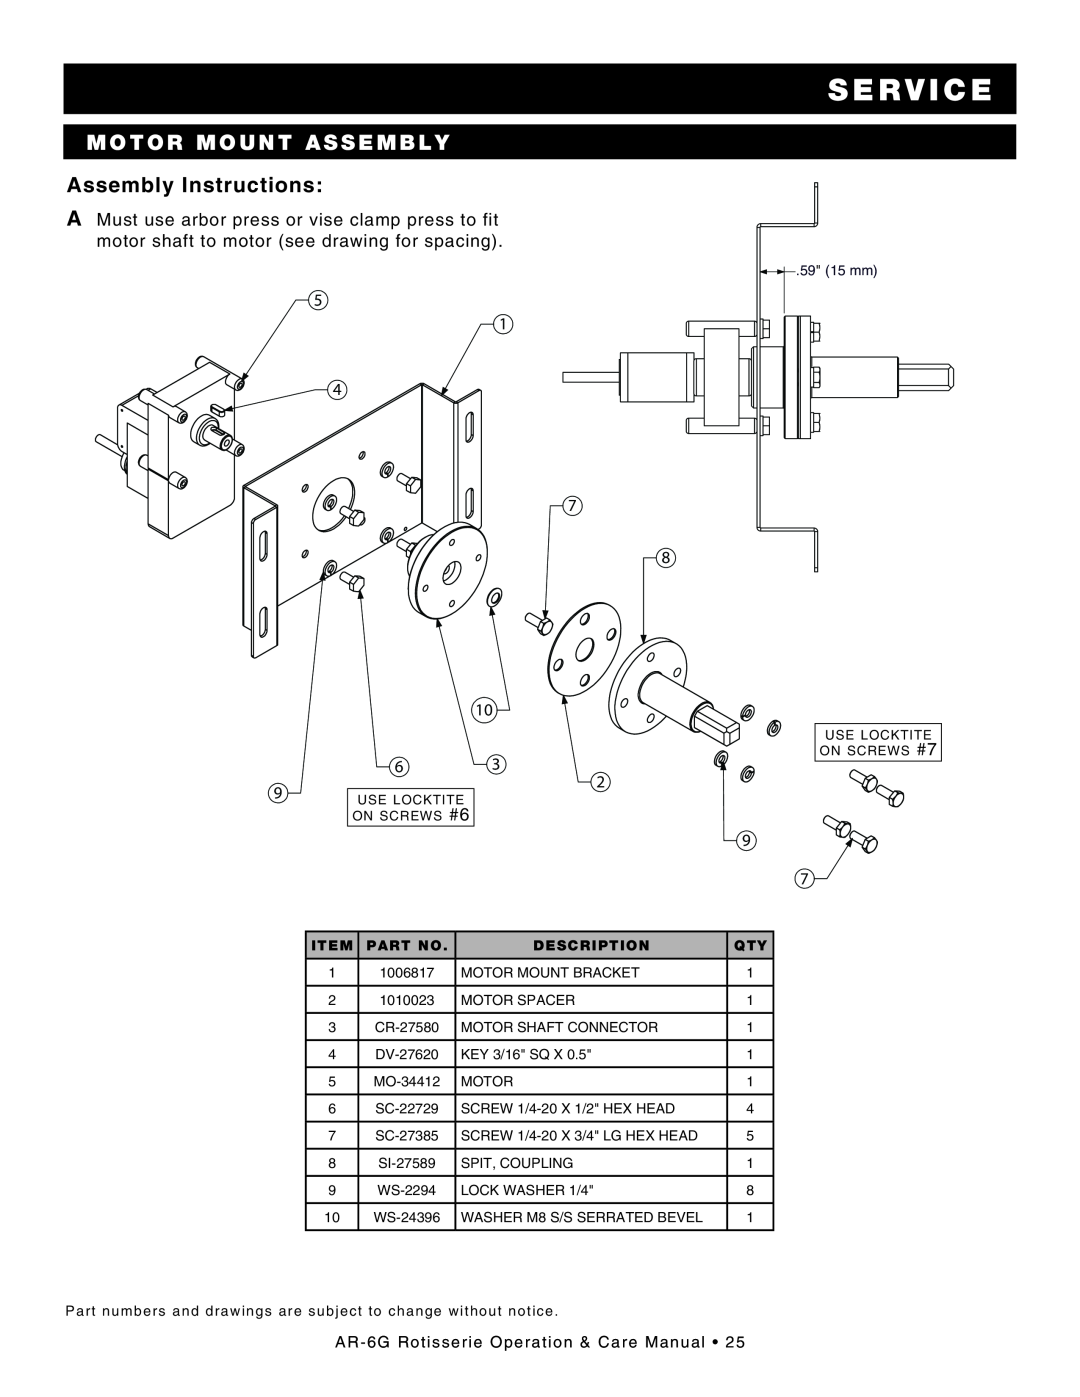 Alto-Shaam AR-6G motor mount assembly, Assembly Instructions, s e rv ic e, 5 1 4 7 8 10 63, Item, PART No, Description 